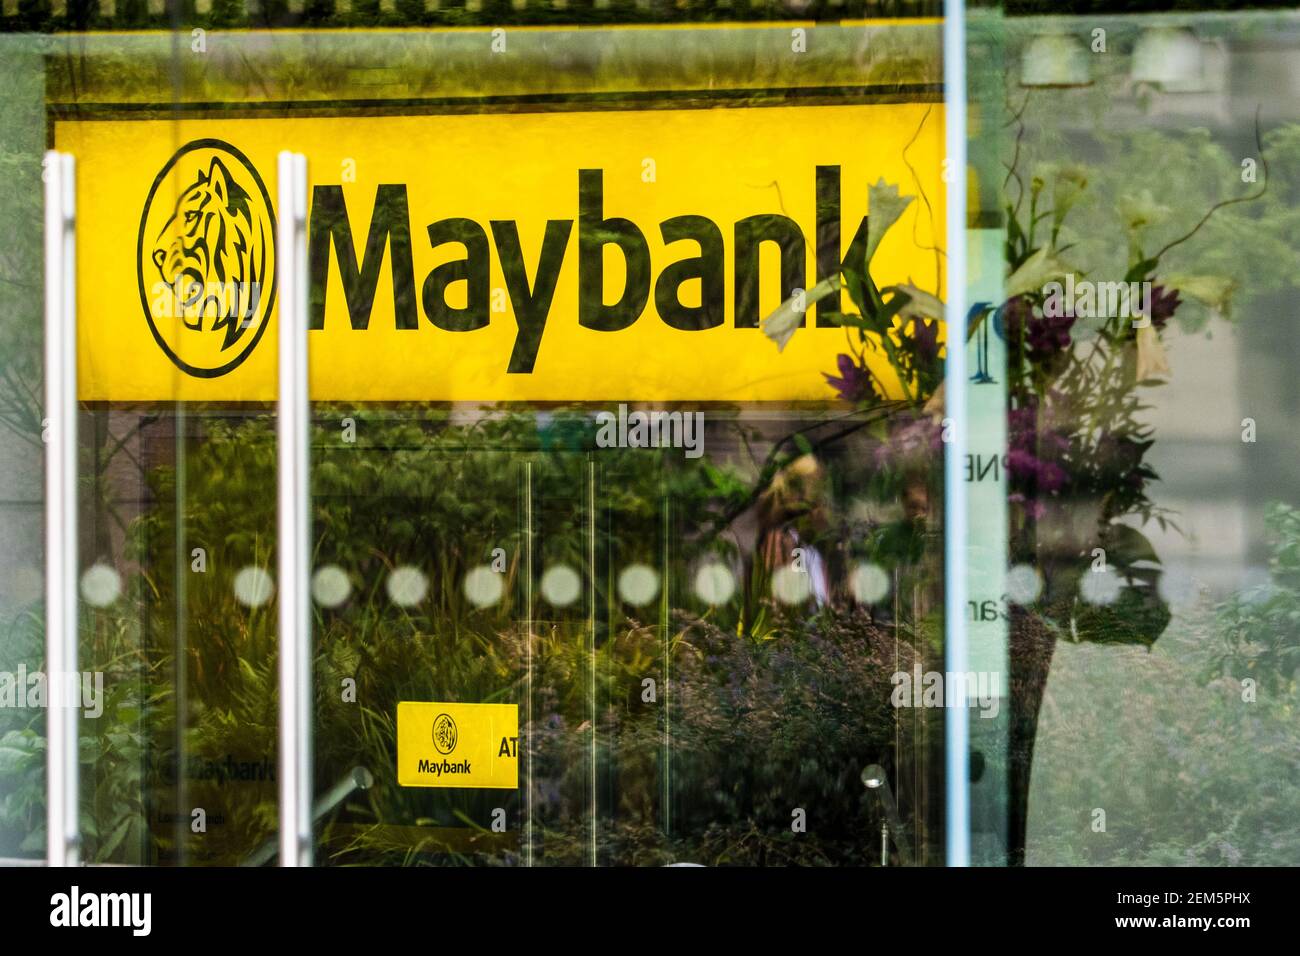 Uffici Maybank Londra nella città di Londra Distretto finanziario - Maybank è un fornitore di servizi bancari all'ingrosso. Sede di Londra fondata nel 1962. Foto Stock